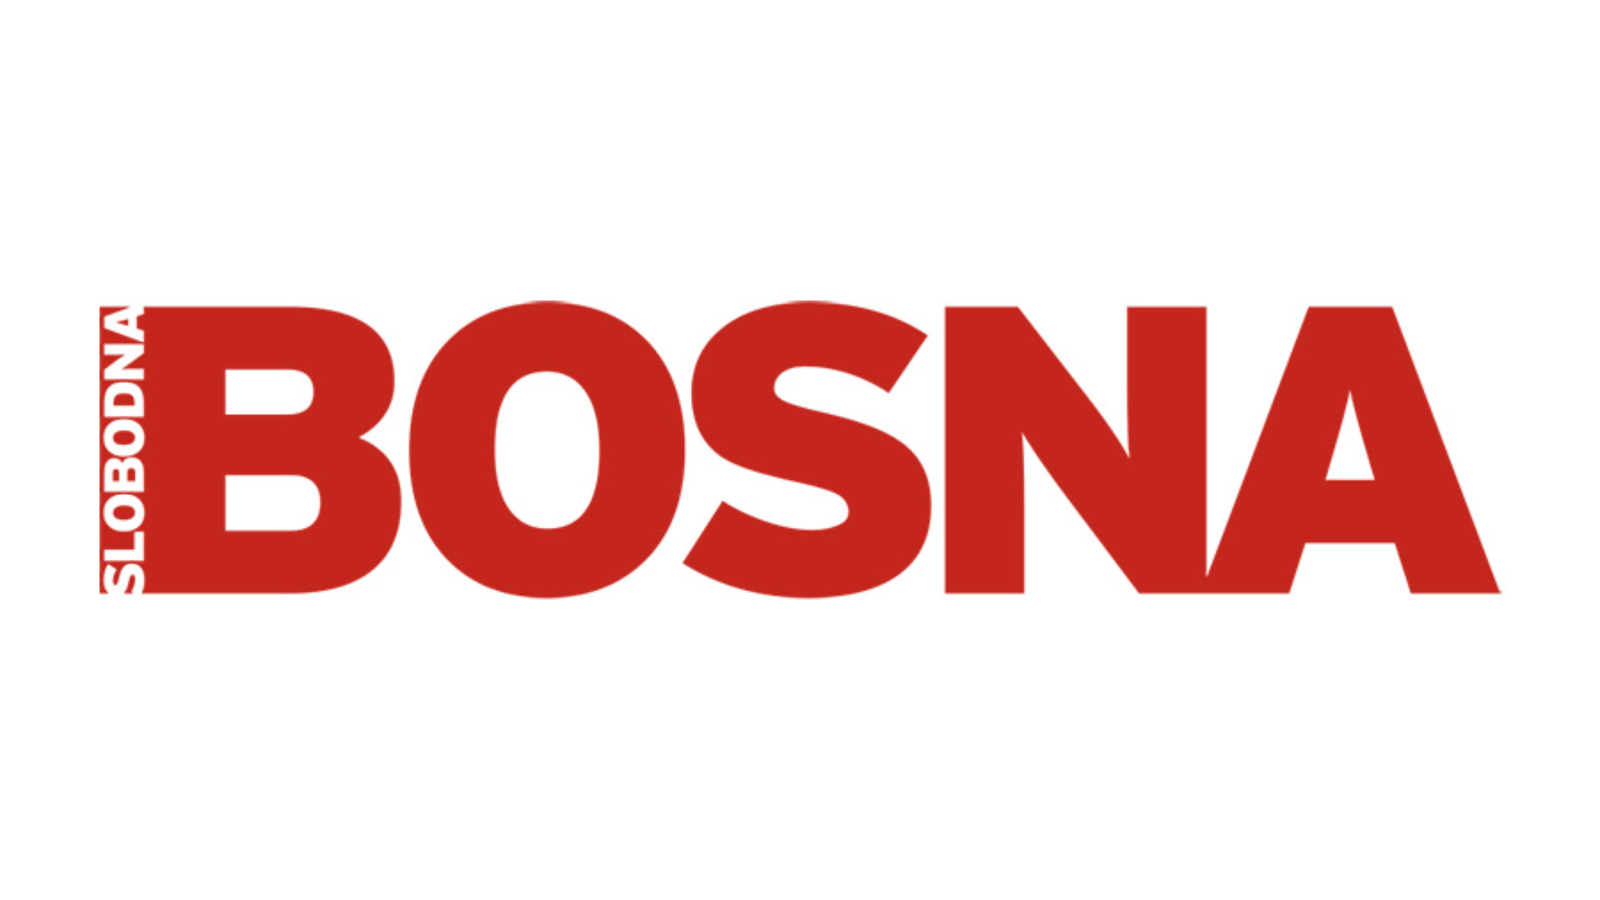 logo_slobodna-bosna